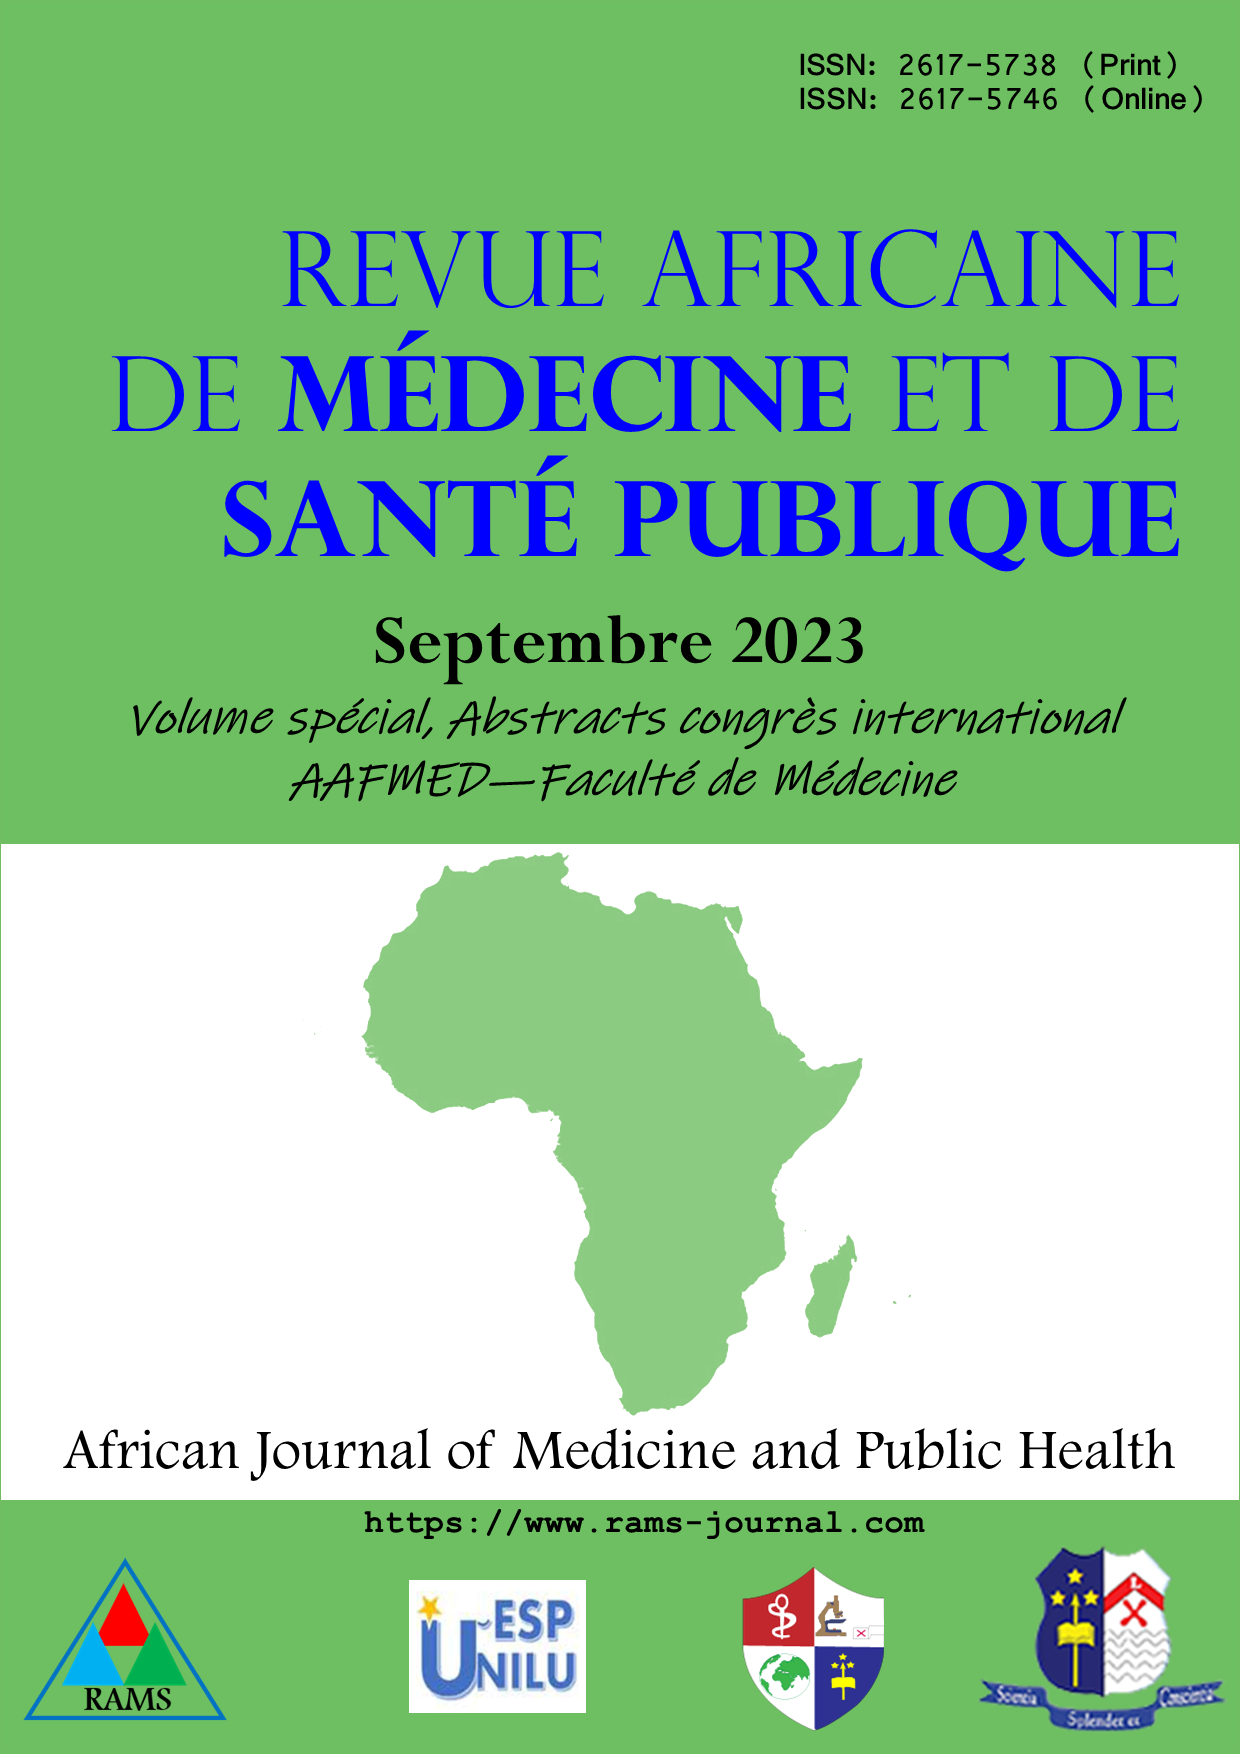 					Afficher 2023: Volume spécial, Abstracts congrès international AAFMED - Faculté de Médecine
				